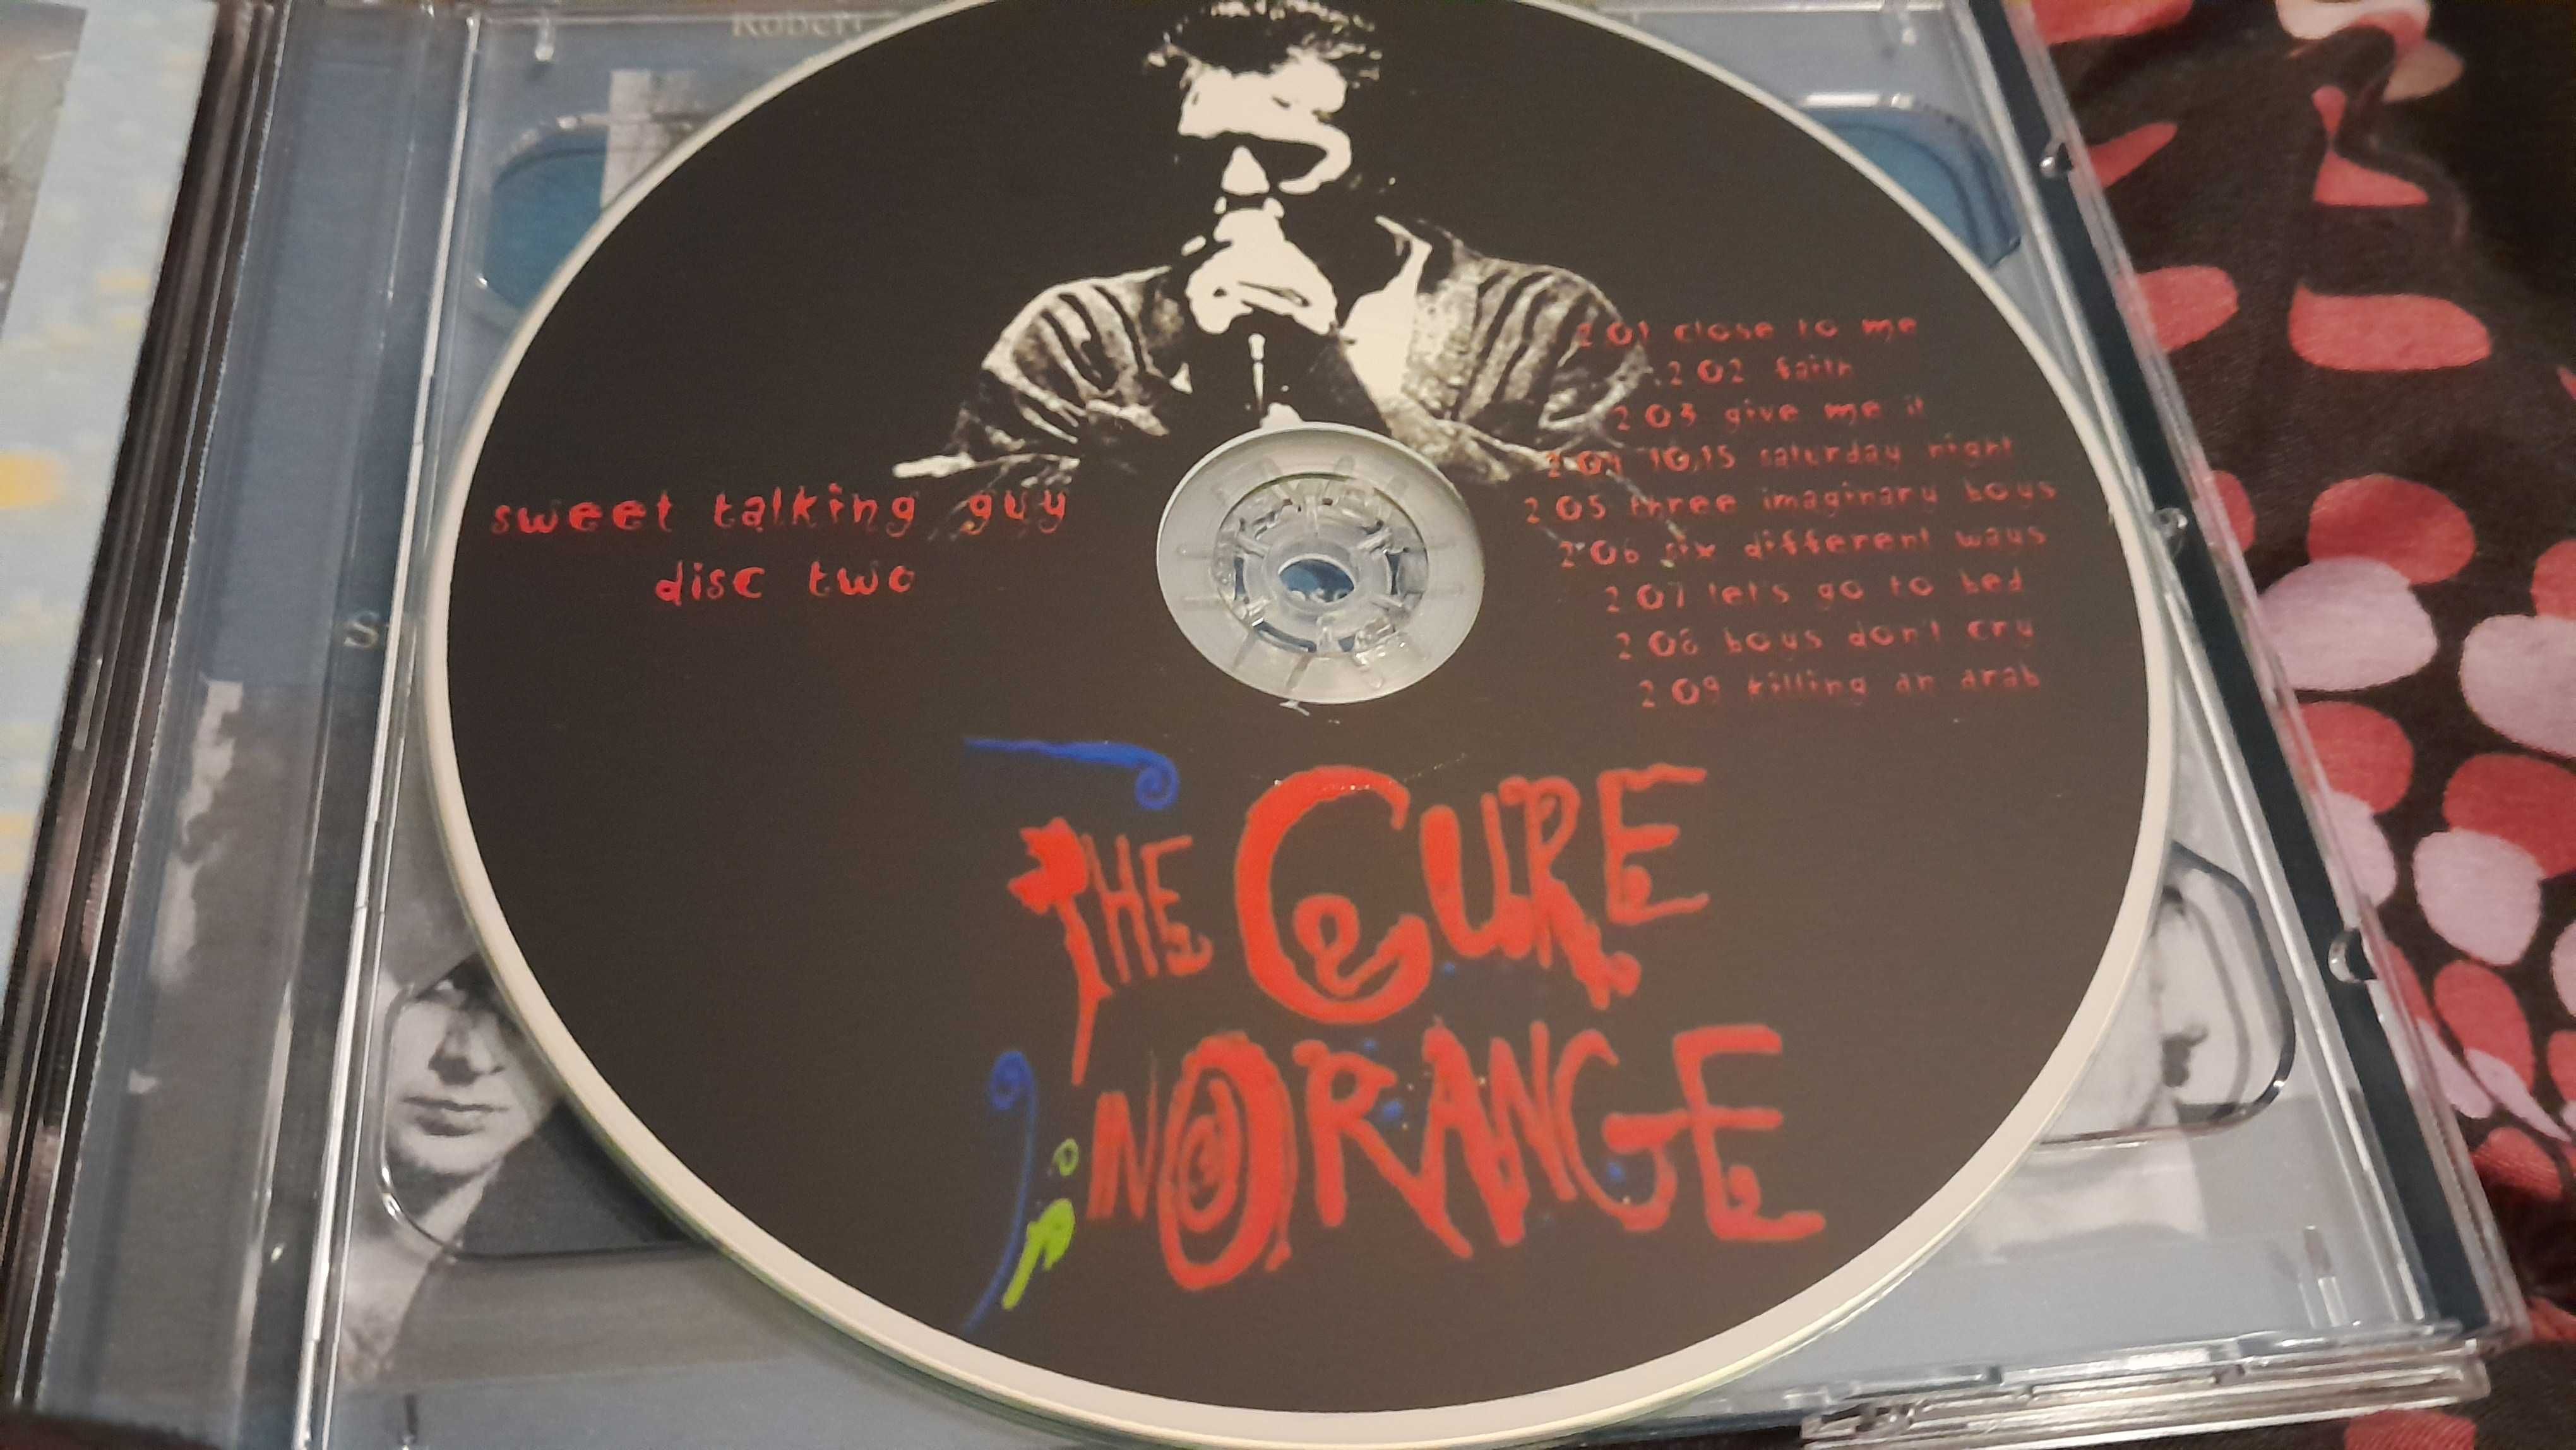 The Cure Sweet Talking Guy 2 cd